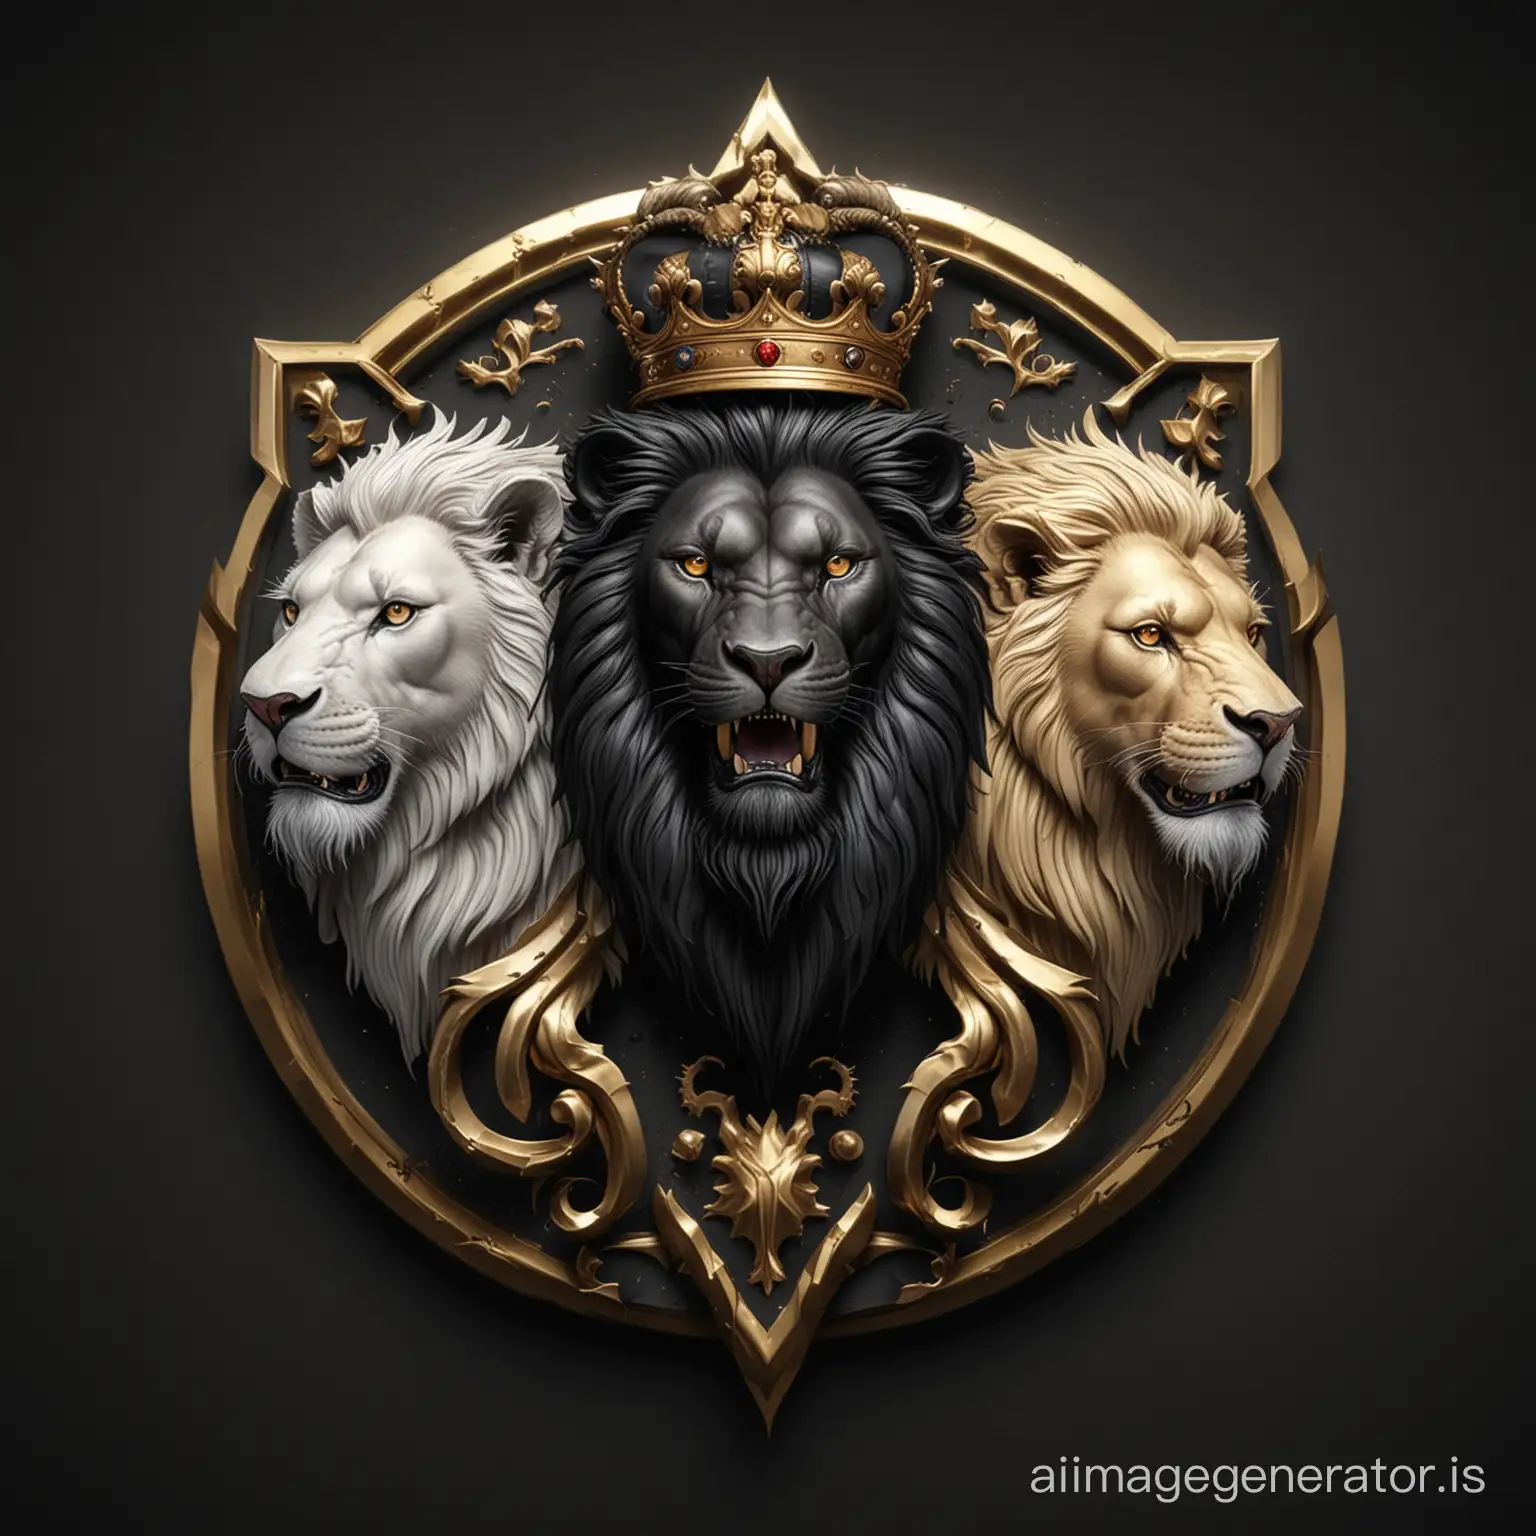 Логотип три льва: в середине черный лев, по бокам золотой и белый львы. Сила, мощь, величие, рык, власть. Векторная графика, стиль реалистик фэнтези, 4K, иллюстрация, черный фон.